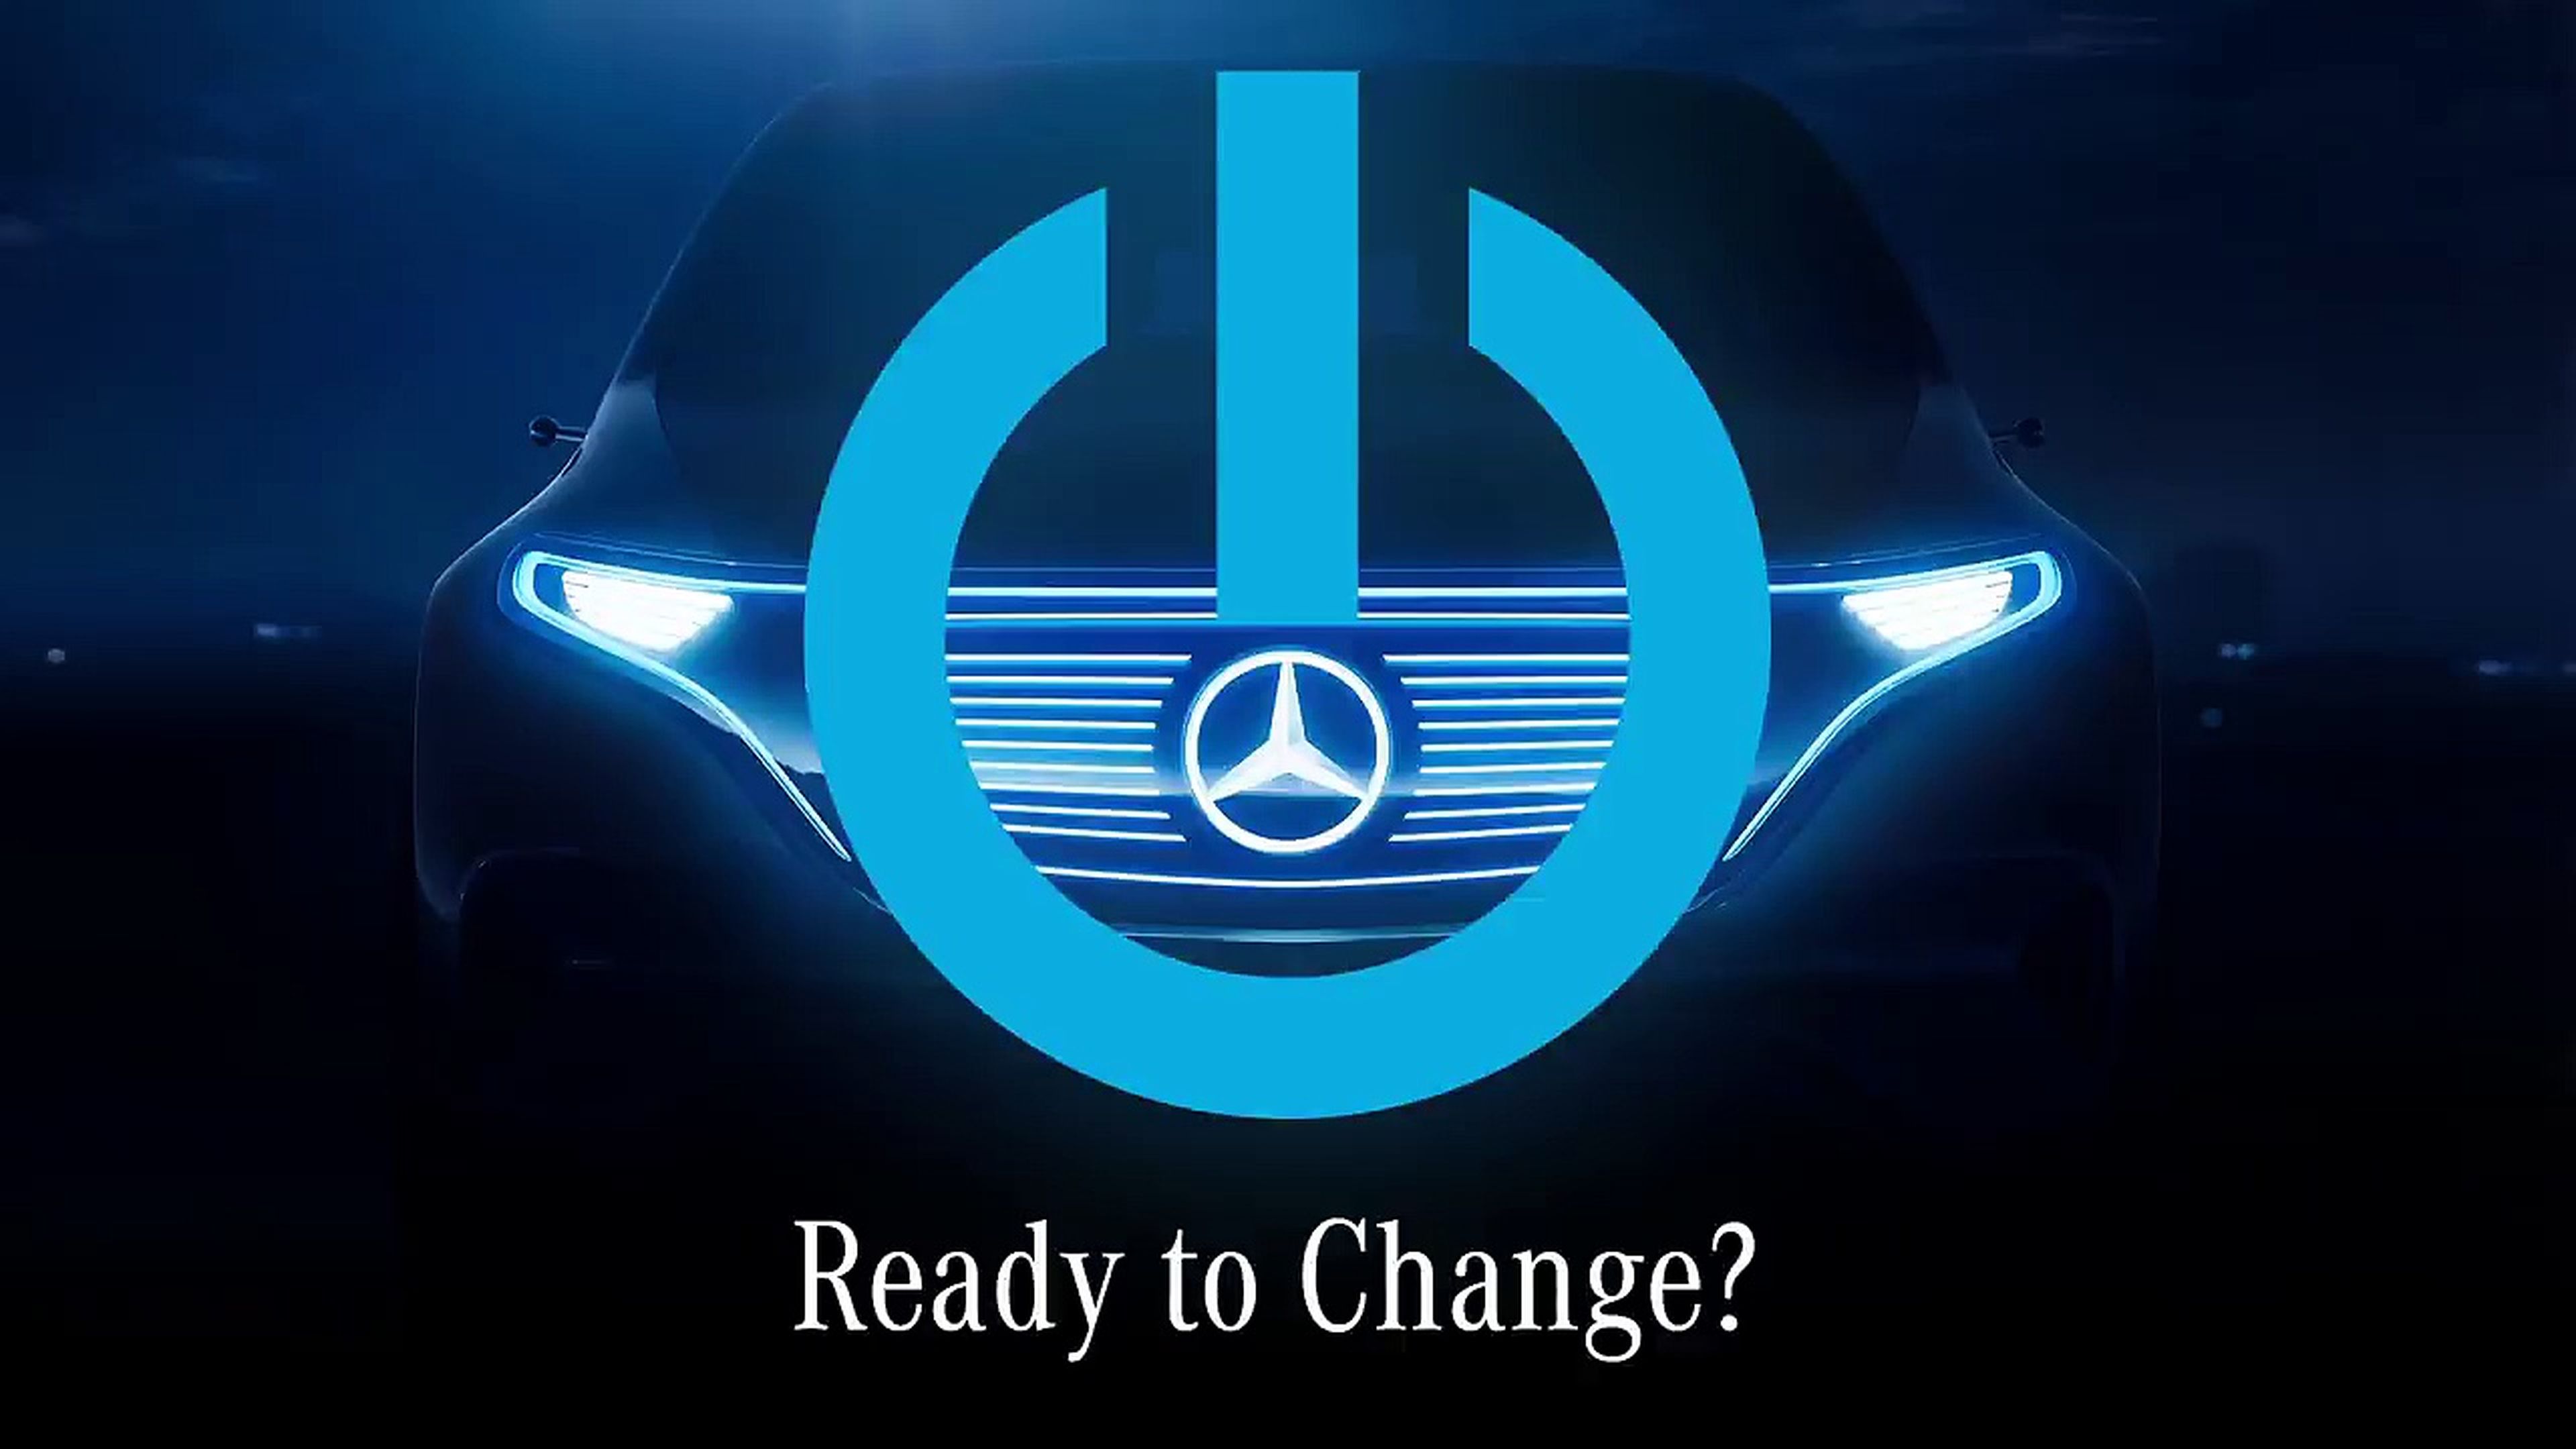 VÍDEO: Mercedes avisa en este teaser, "¿listos para el cambio?"